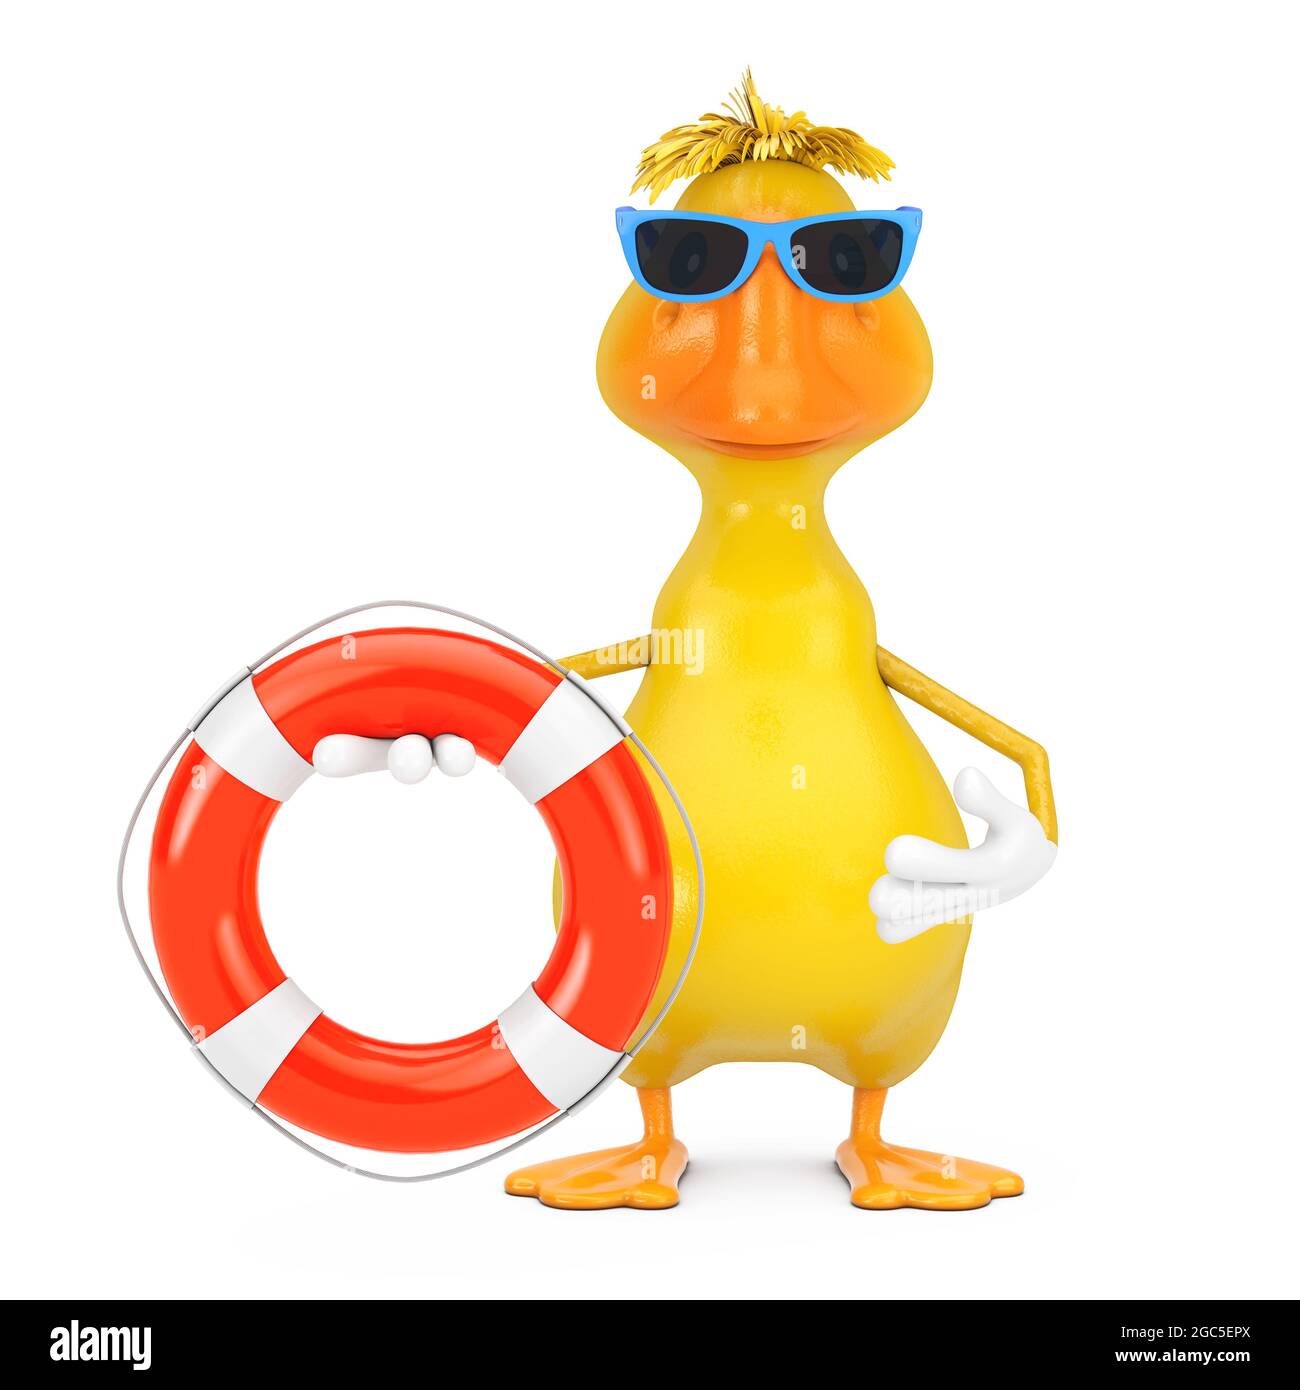 Joli dessin animé jaune personnage de canard Mascot avec bouée de vie sur fond blanc. Rendu 3d Banque D'Images